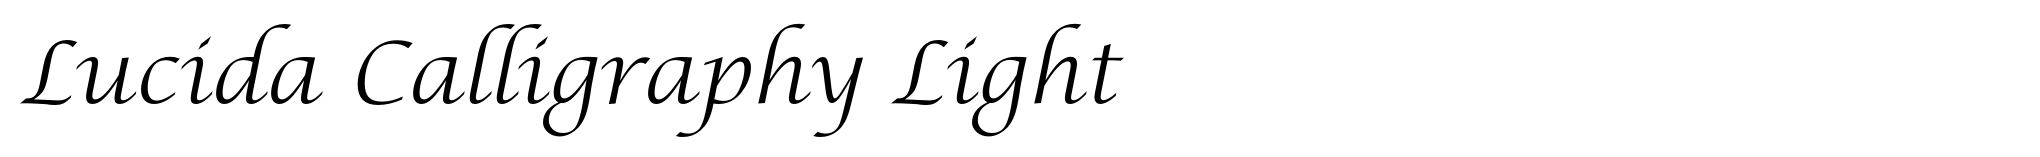 Lucida Calligraphy Light image